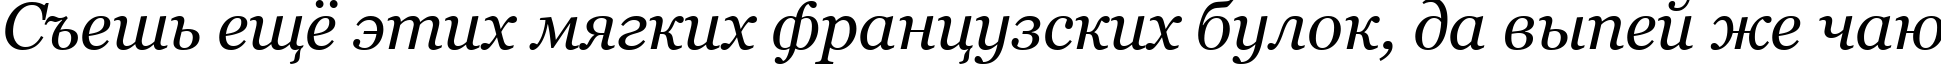 Пример написания шрифтом Georgia Italic текста на русском